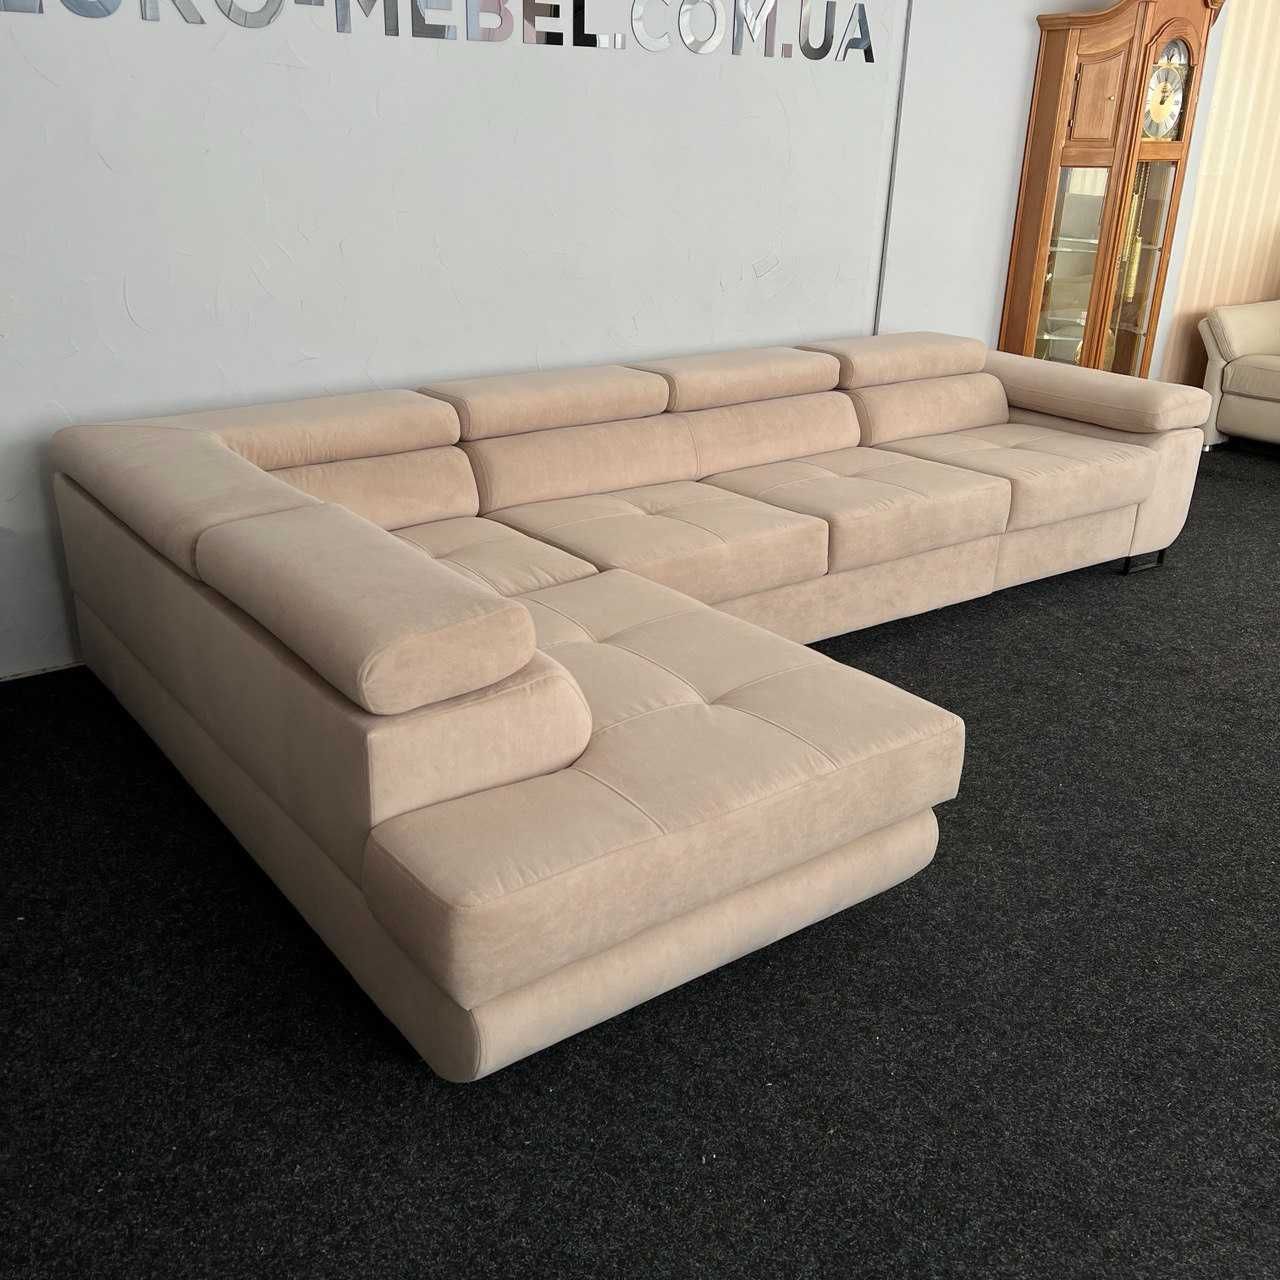 БЕЗКОШТОВНА ДОСТАВКА Новий розкладний диван велюр антикіготь купити